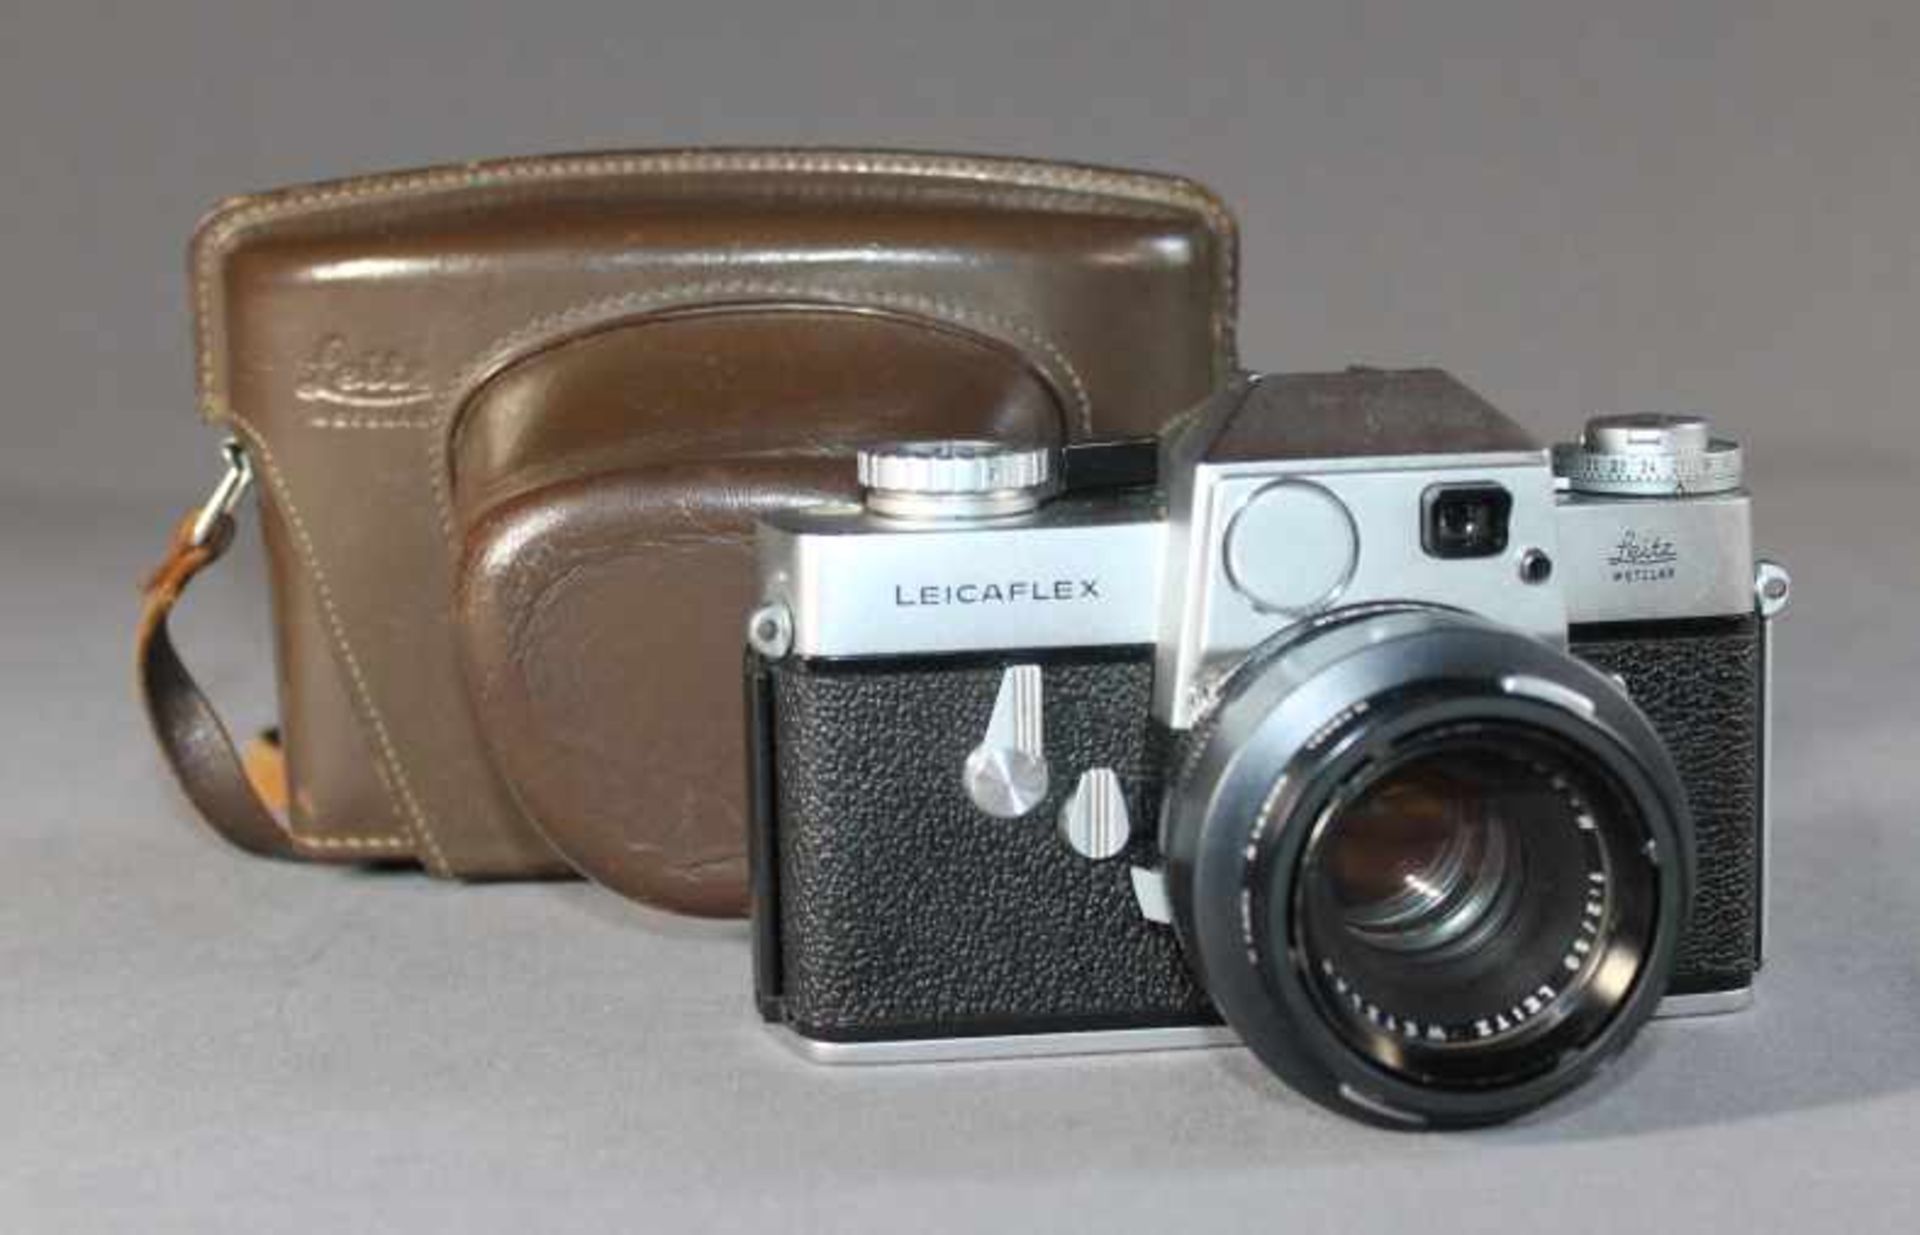 1 Spiegelreflexkamera "Leicaflex", Gehäusenr. 1125311, mit Summicron-R 1:2/50 Nr. 2158237, manueller